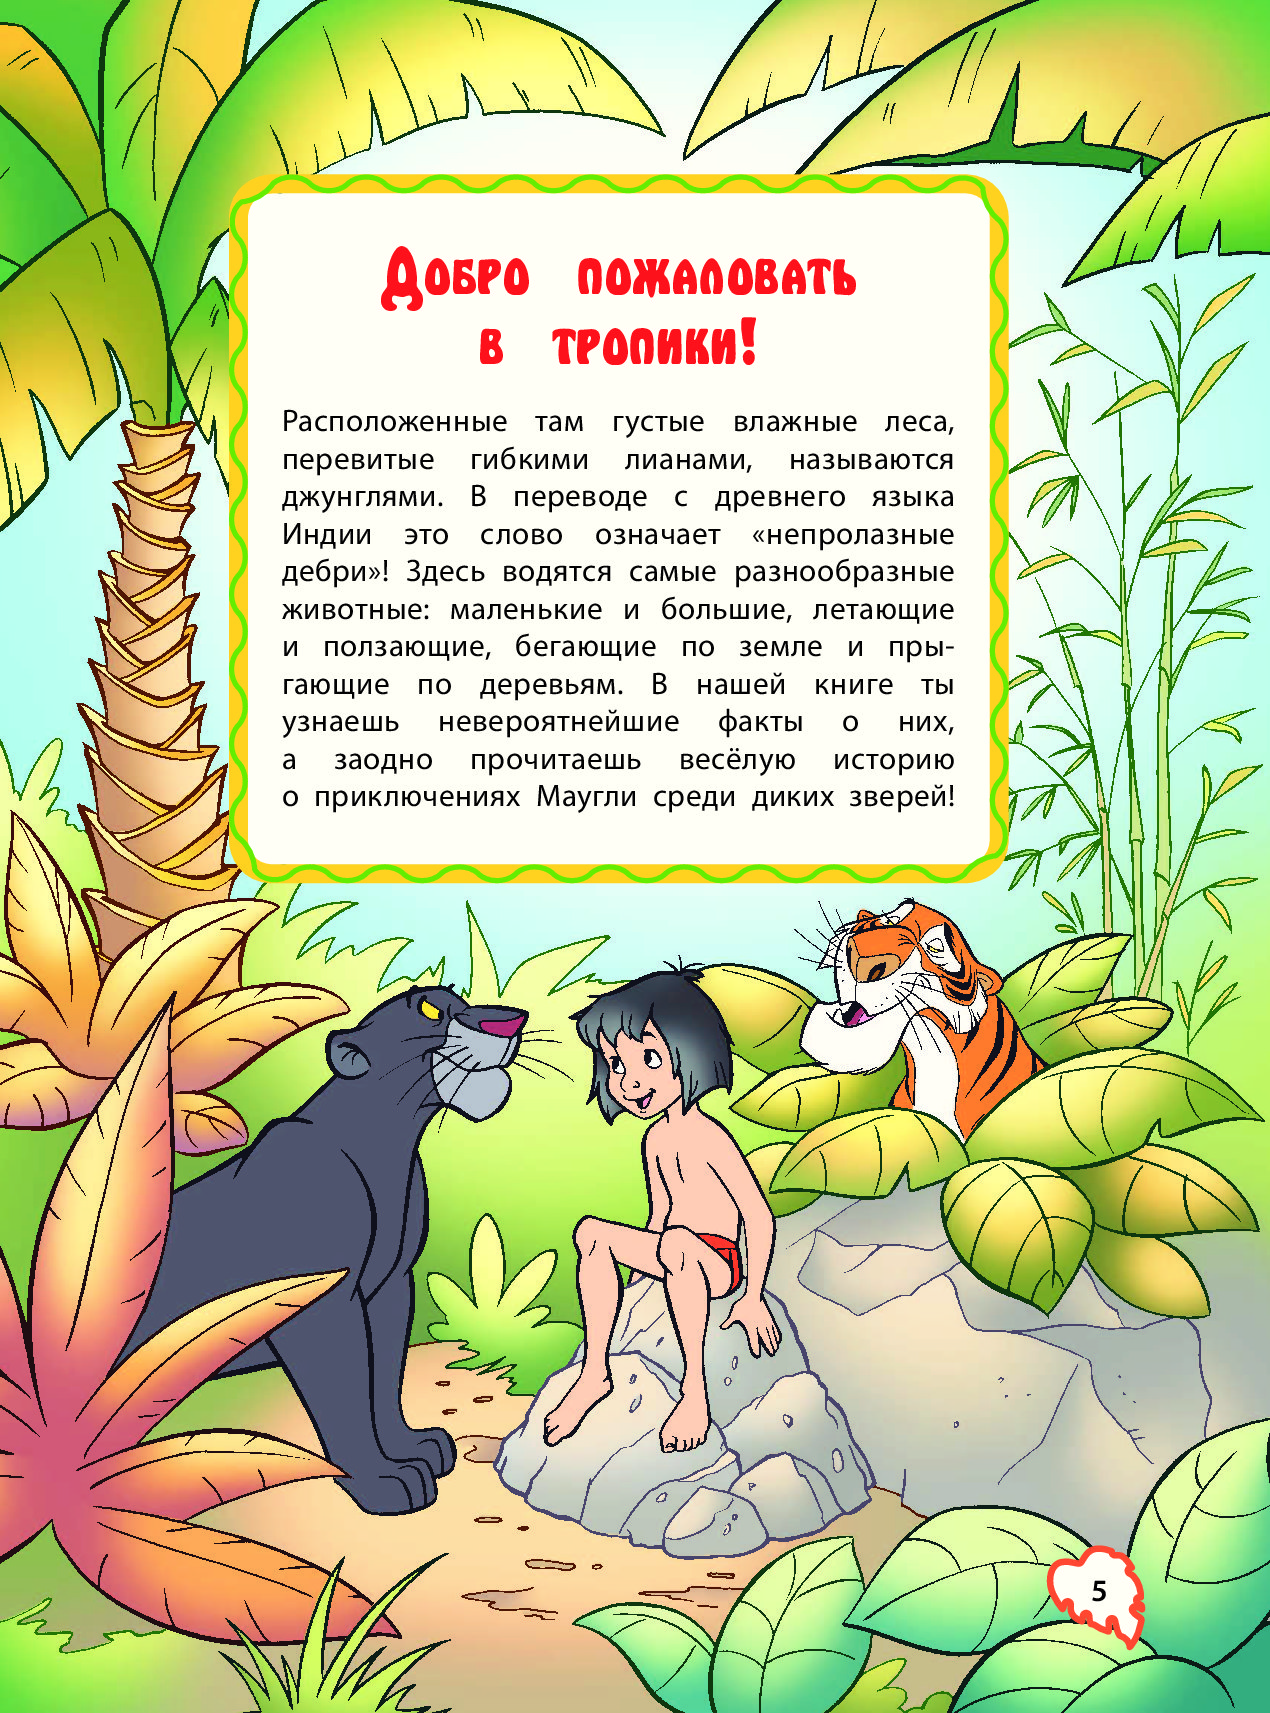 Описание джунглей. Маугли книга джунглей книга. Маугли иллюстрации к книге. Законы джунглей из книги Маугли. Обитатели джунглей с Маугли книга.